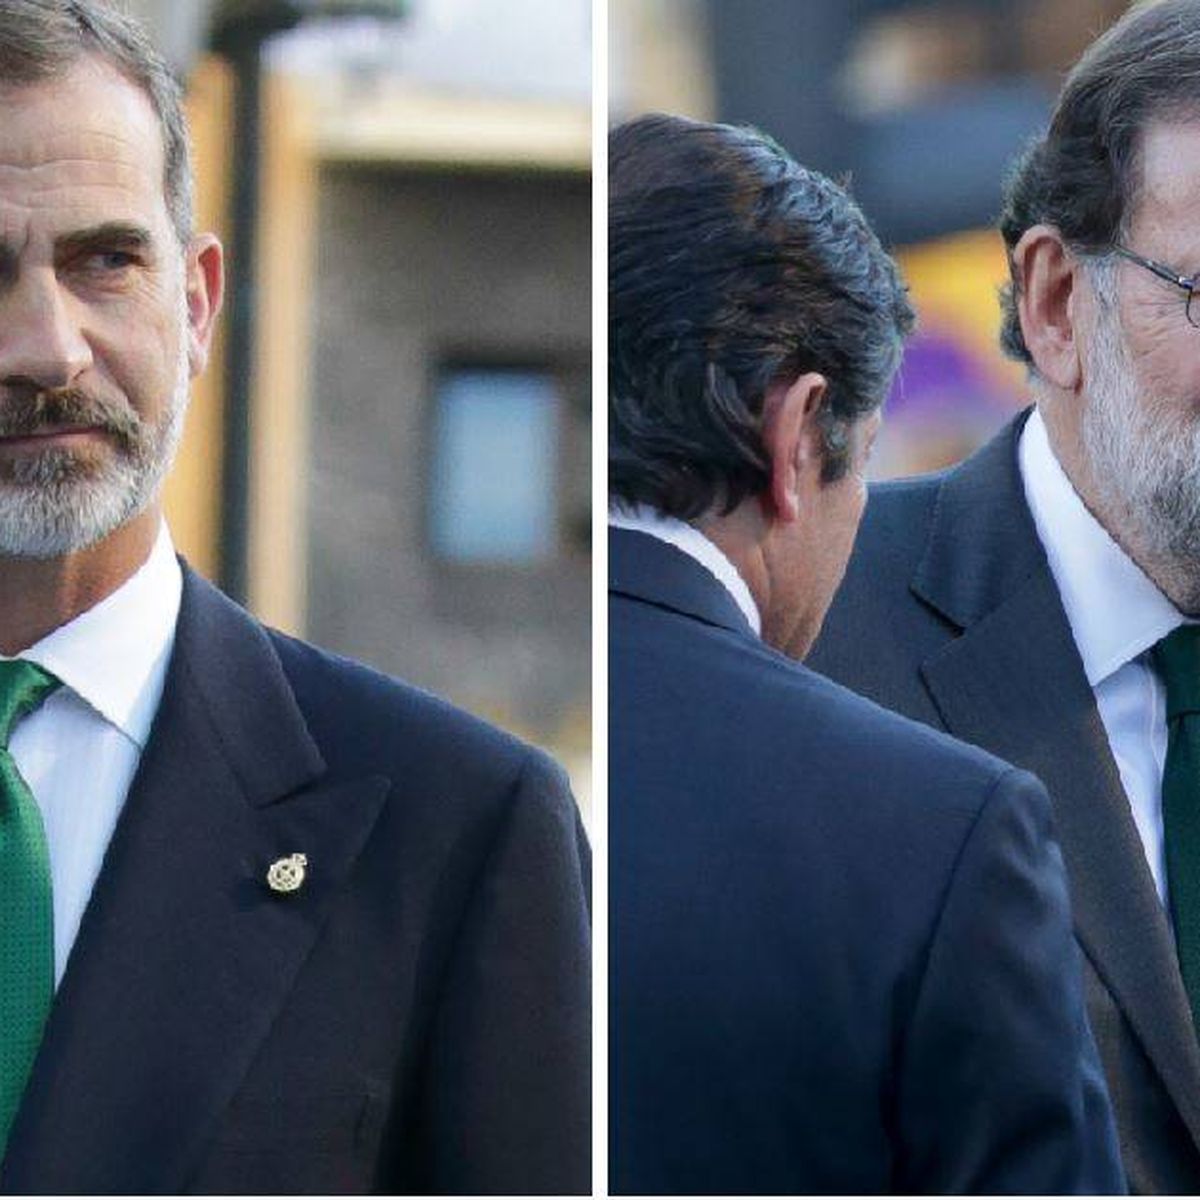 Felipe VI, Mariano Rajoy y el misterio de la V.E.R.D.E. el Rey de España)